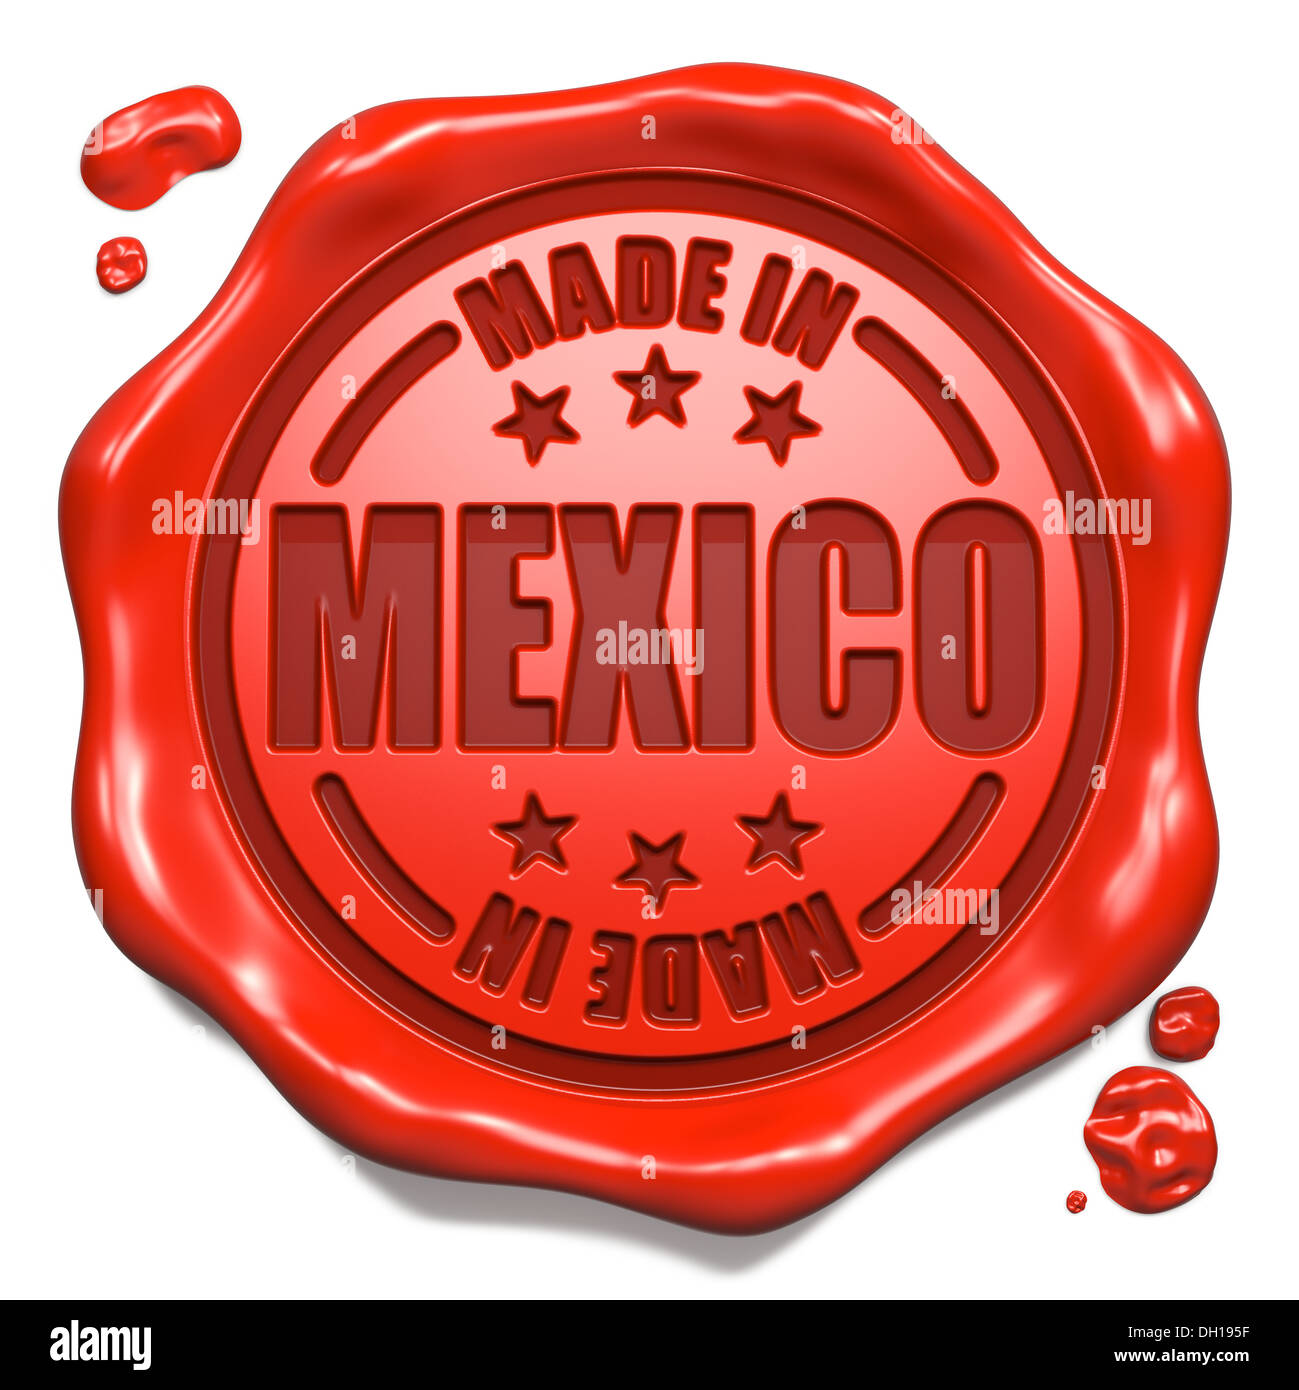 Realizzato in Messico - Timbro sul sigillo di cera rossa. Foto Stock